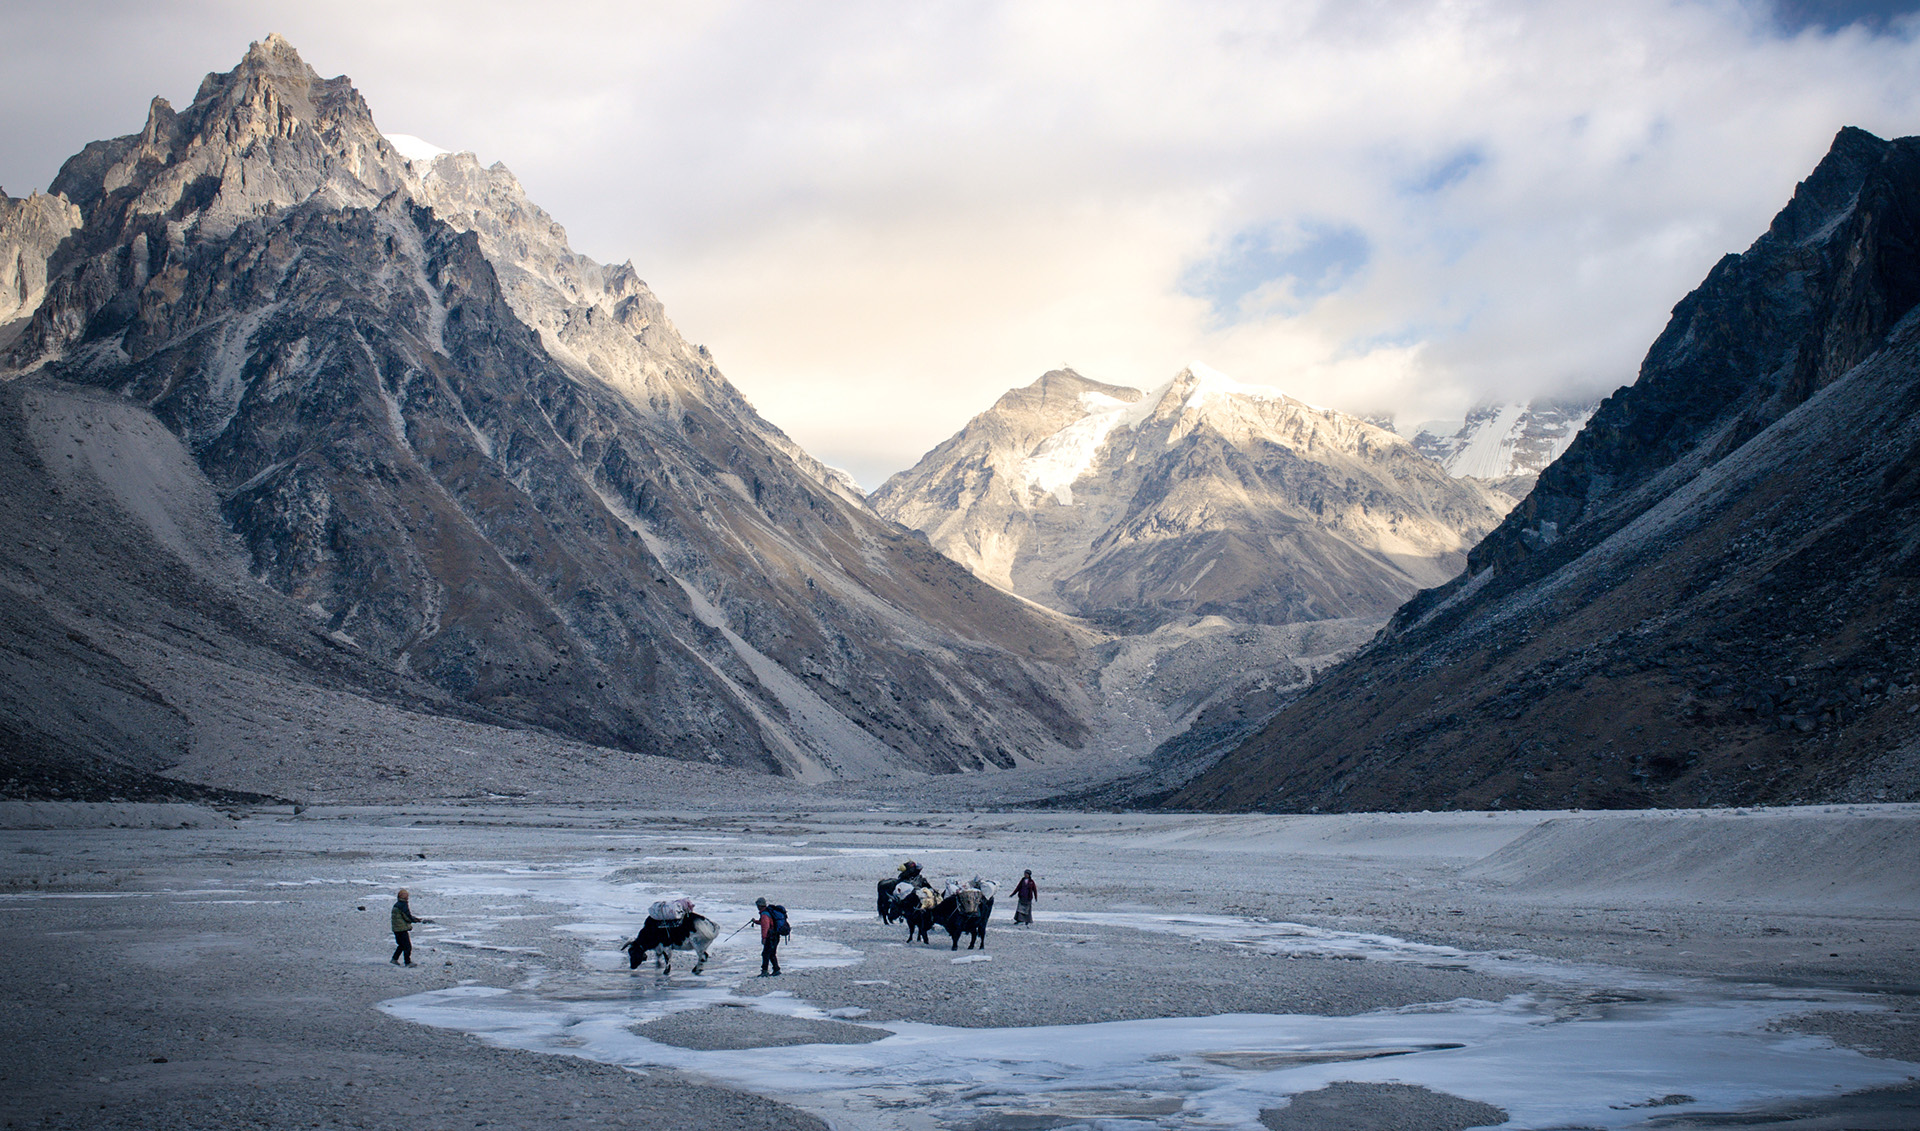 Grupa ludzi wraz z osłami trzymającymi na plecach ich dobytek, przeprawiają się przez przełęcz.